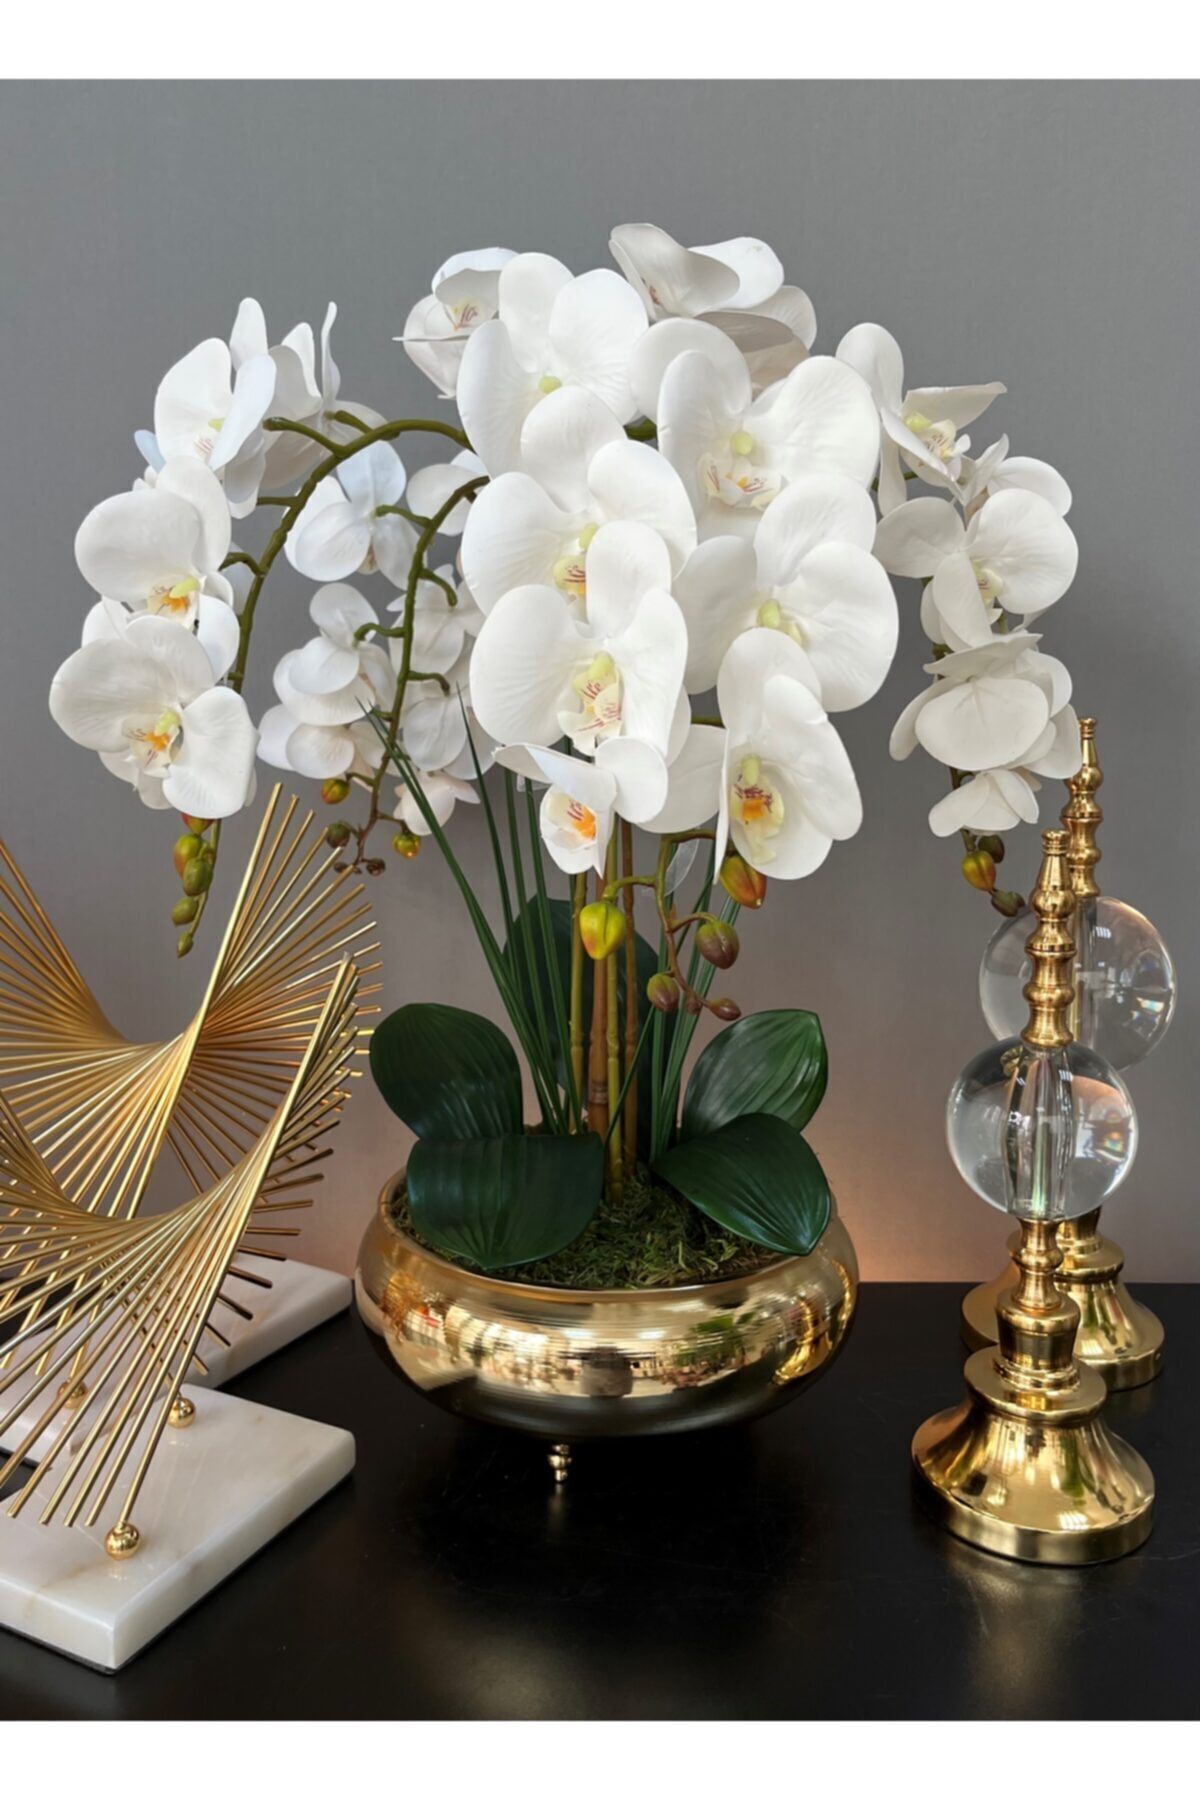 LİLOTEHOME Yapay Islak Luxury Beyaz Orkide 4 Dal Aranjman Parlak Gold Ufo Saksı